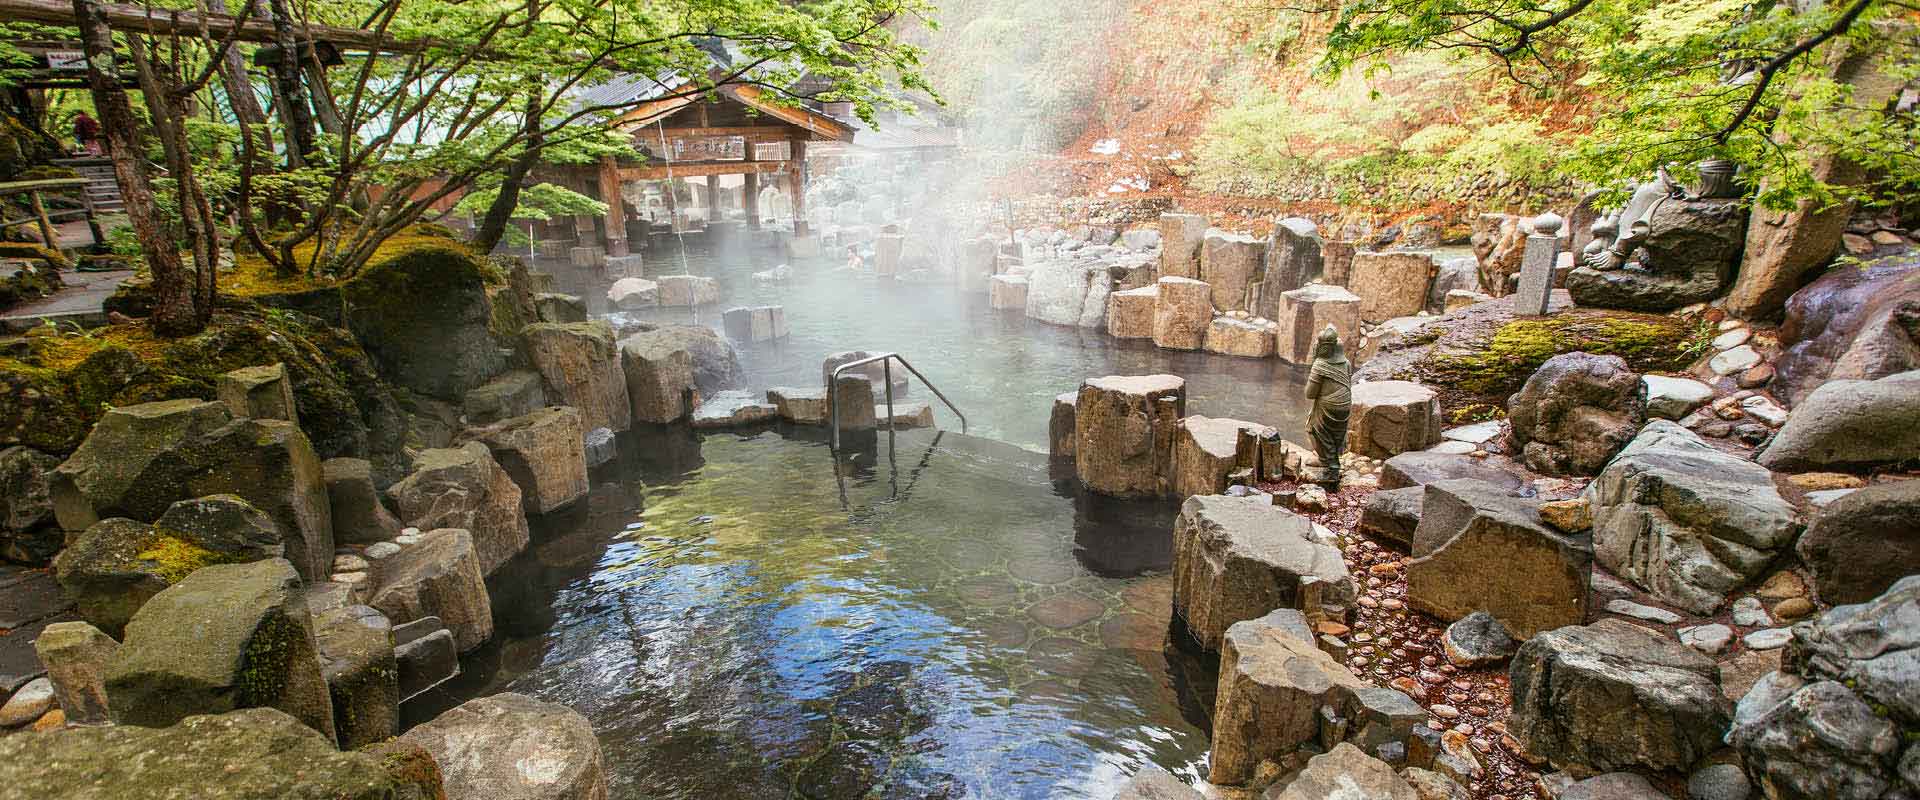 takaragawa hot springs onsen japan 12 5